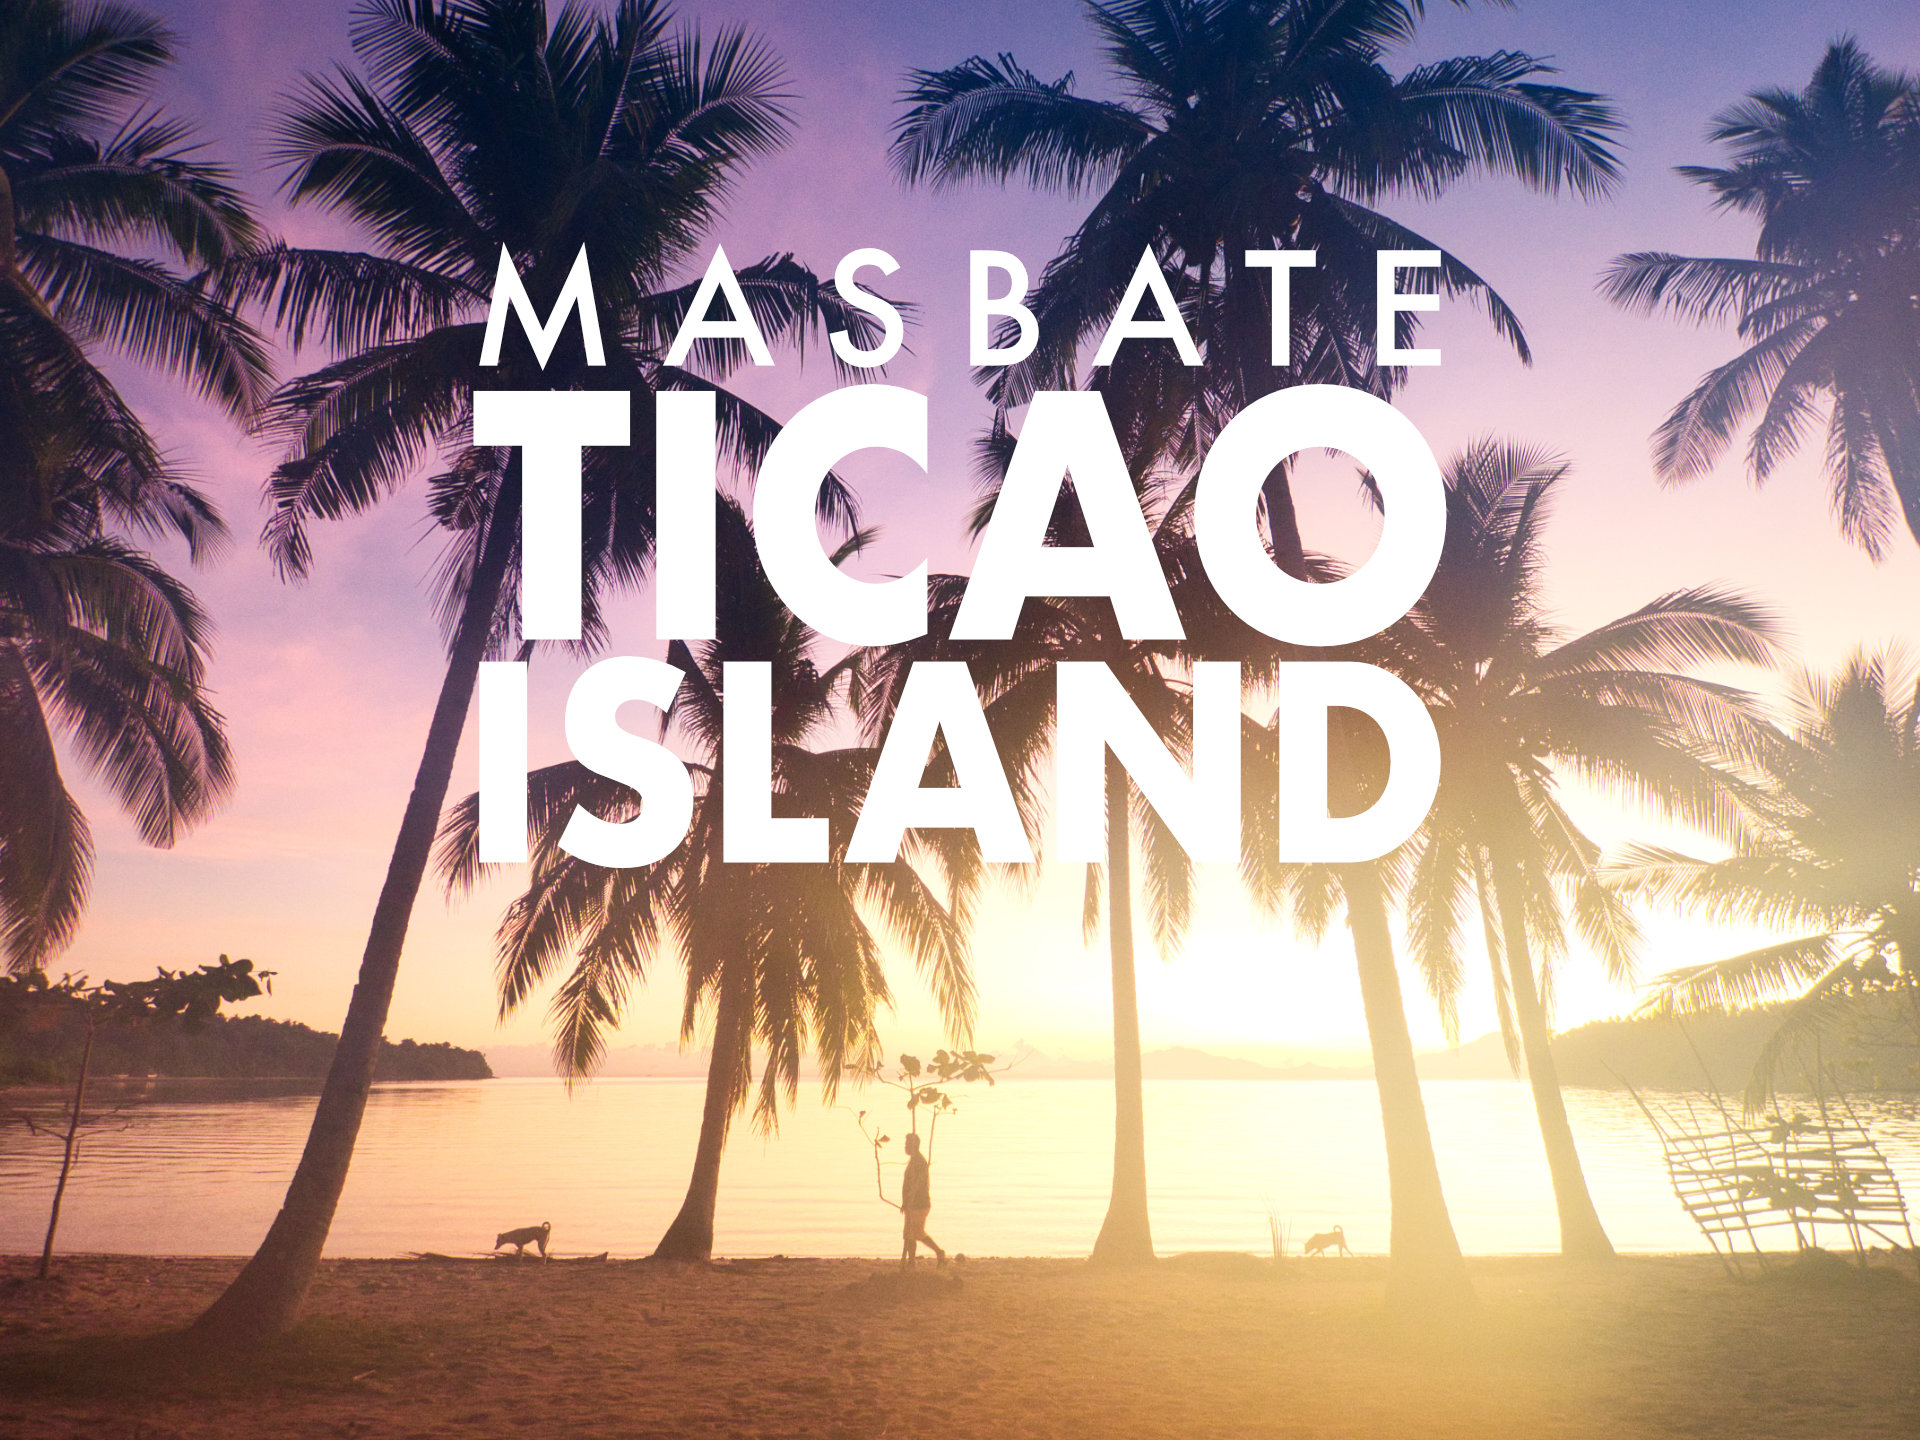 Ticao island in Masbate